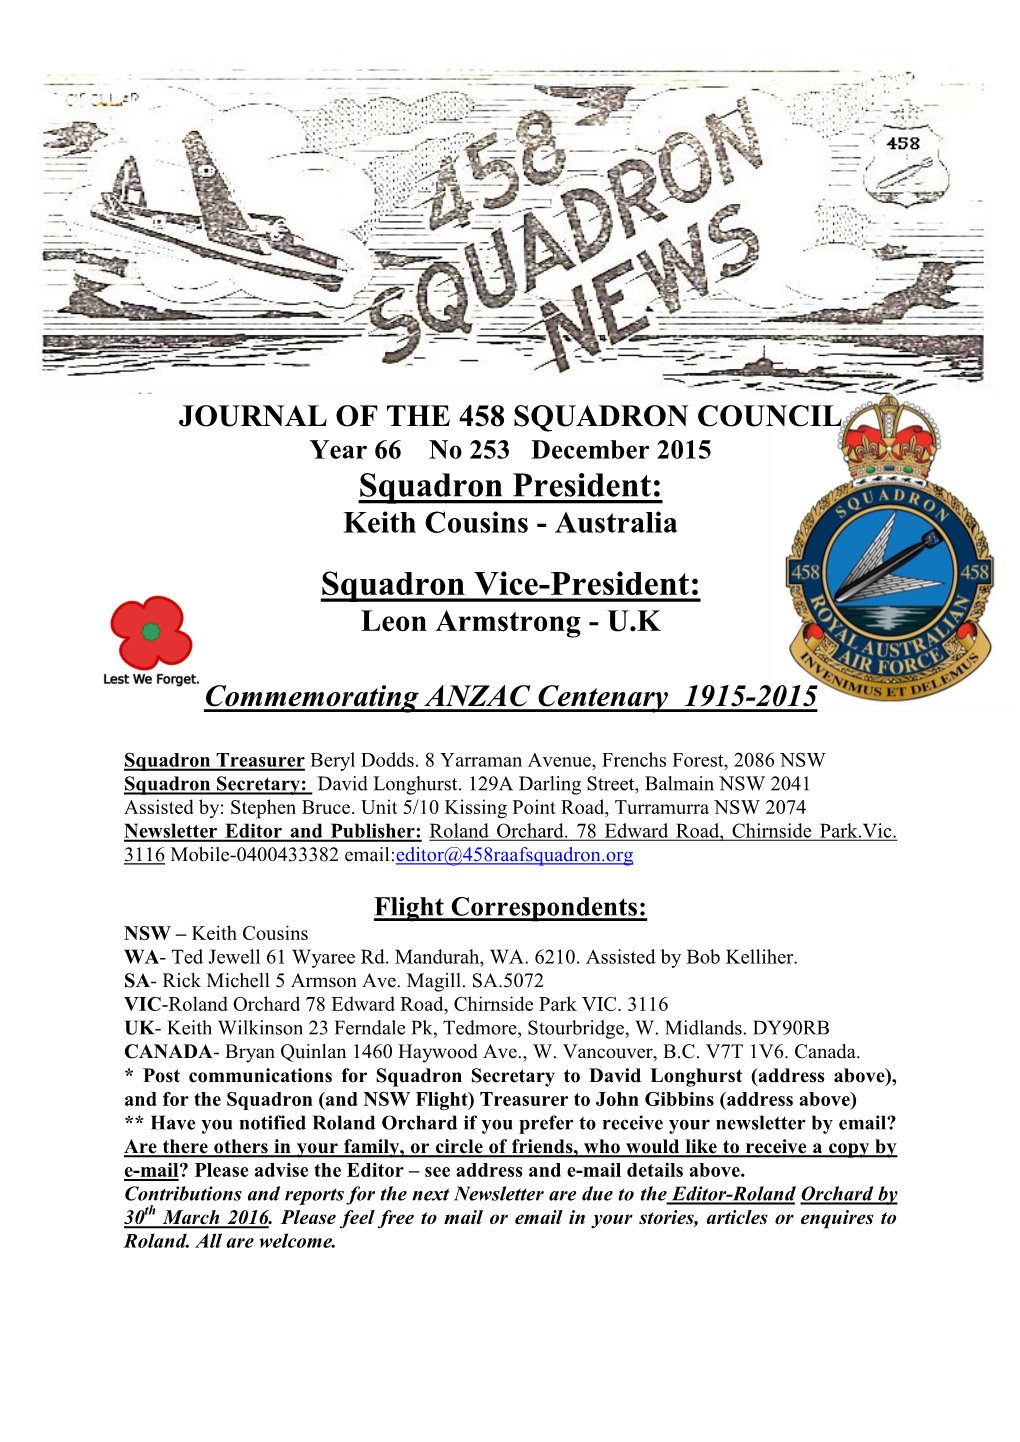 Year 66 No 253 December 2015 Squadron President: Keith Cousins - Australia